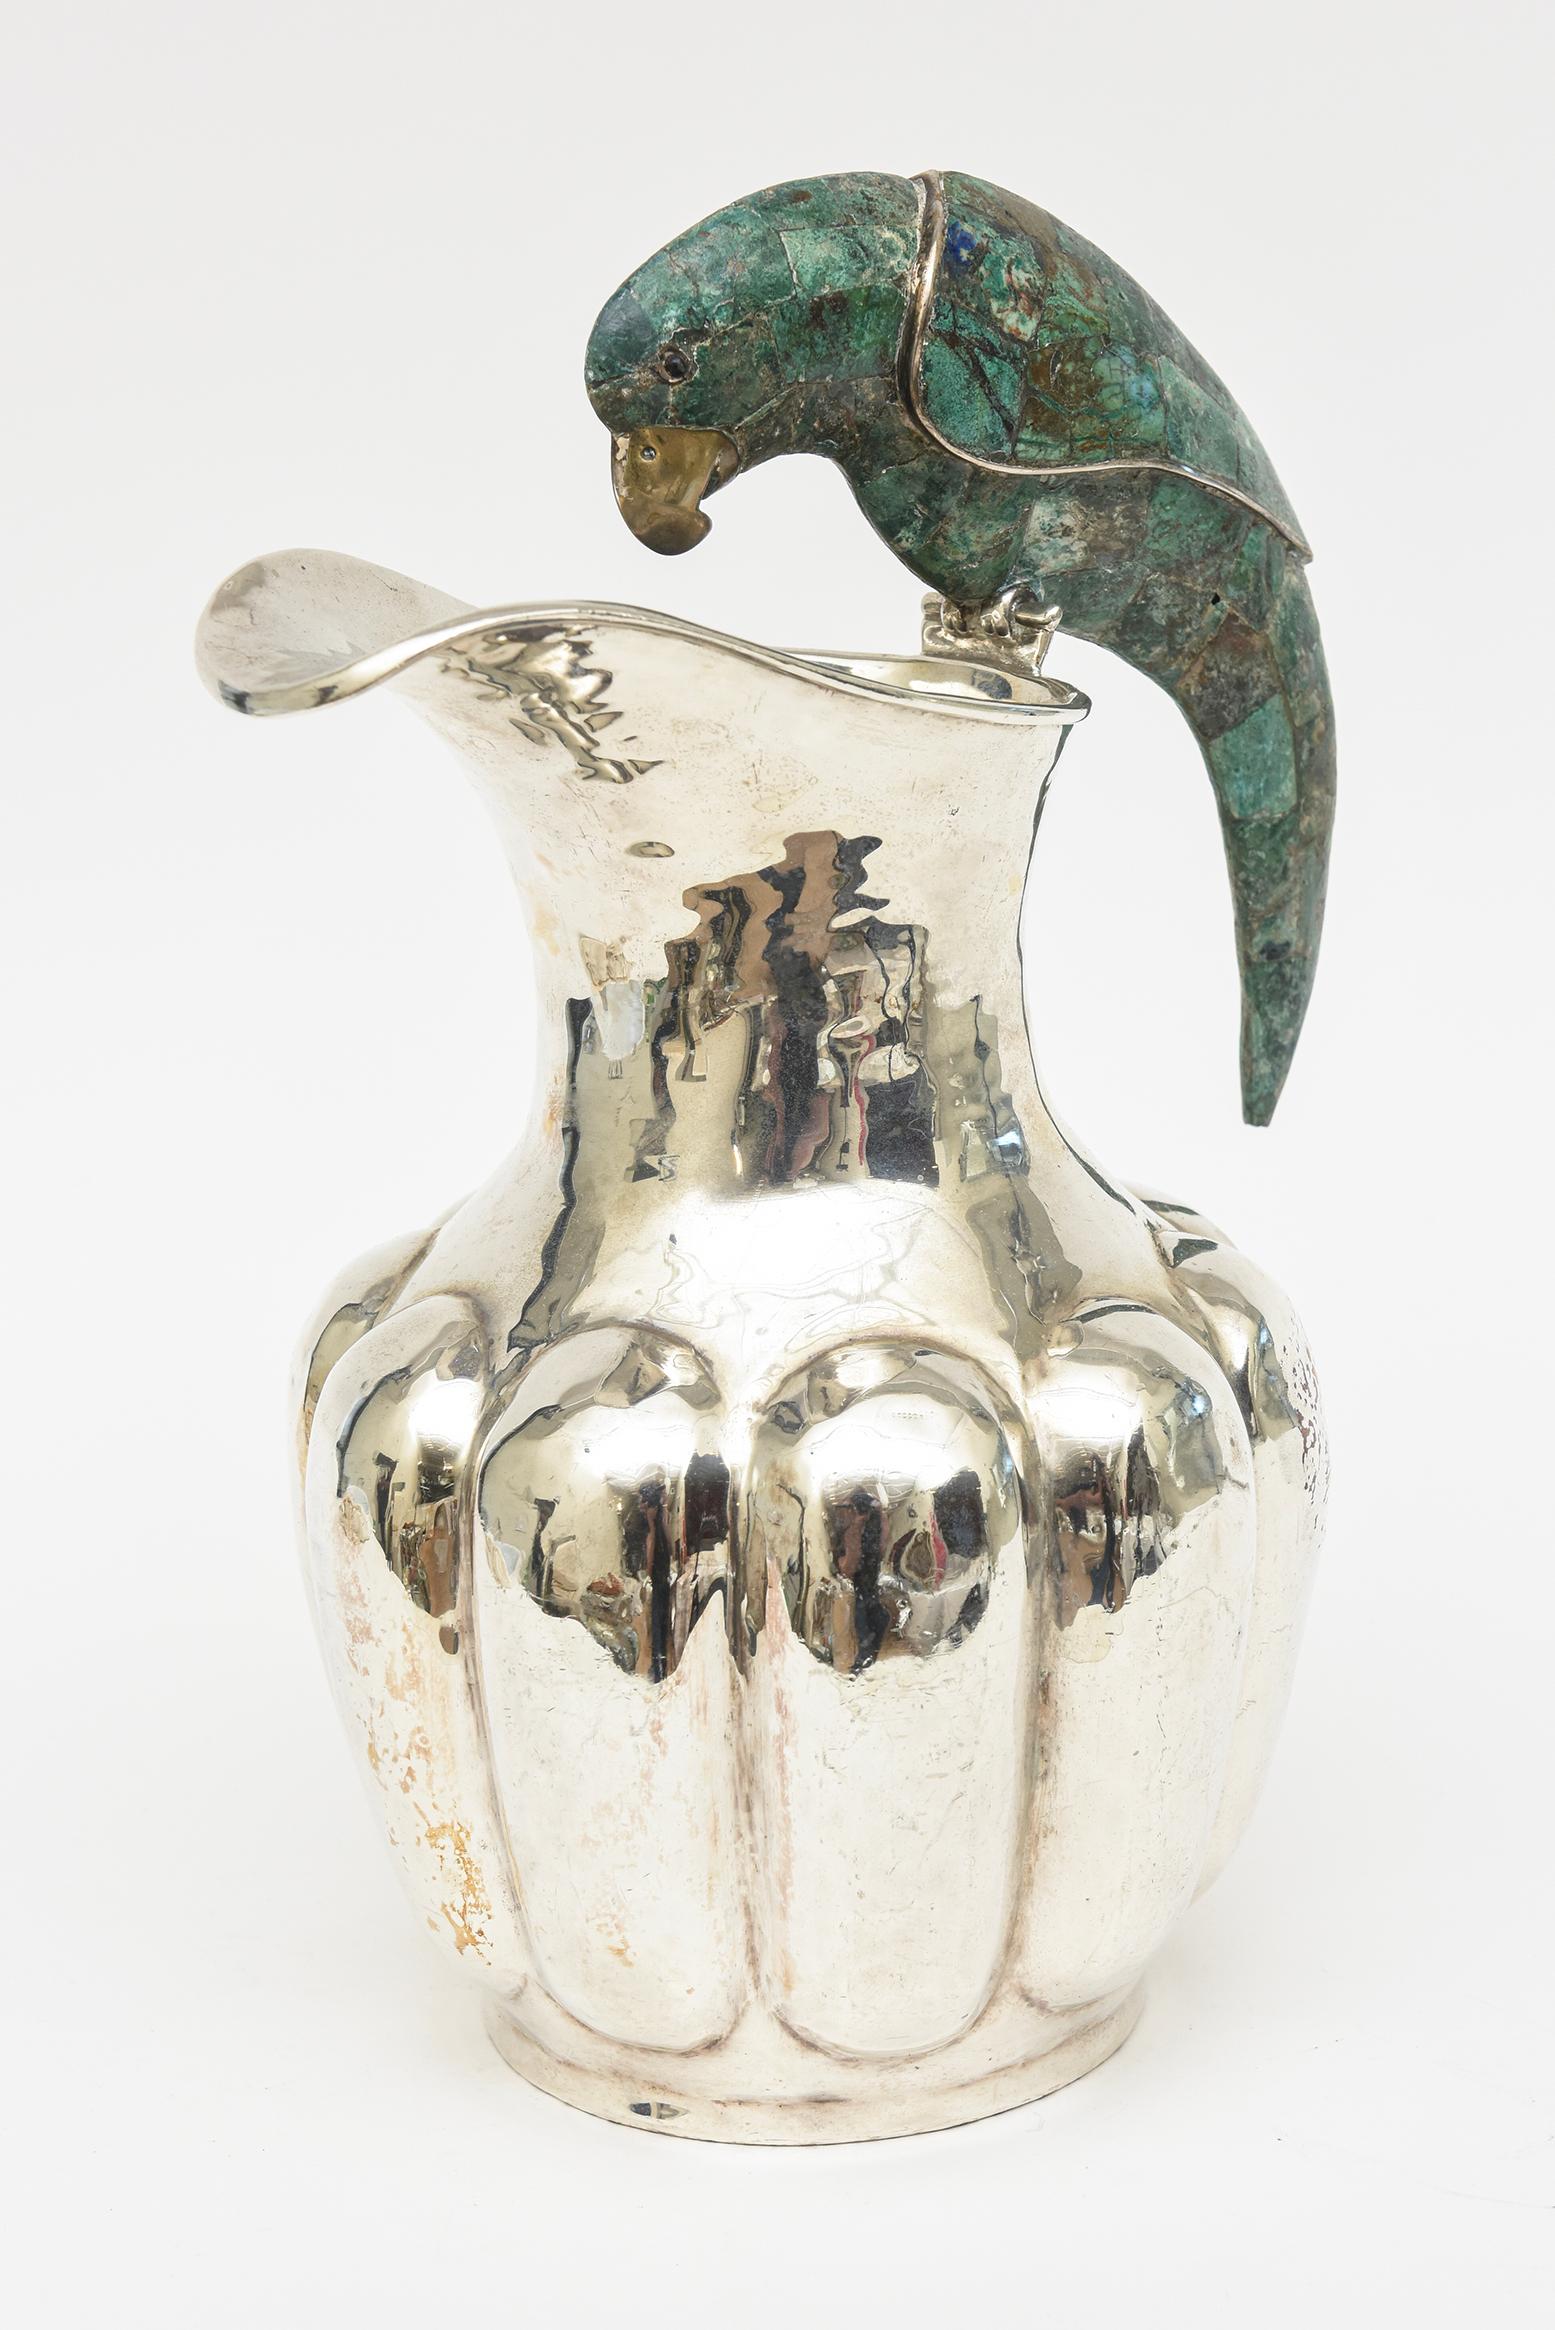 Diese schöne, gepunzte  Vintage Los Castillo Hand gehämmert Silber Platte Vase oder Gefäß ist Mitte des Jahrhunderts modern. Es handelt sich um ein grobmaschiges Silberblech. Der sitzende Papagei auf der Spitze besteht aus zerkleinerten Türkisen mit